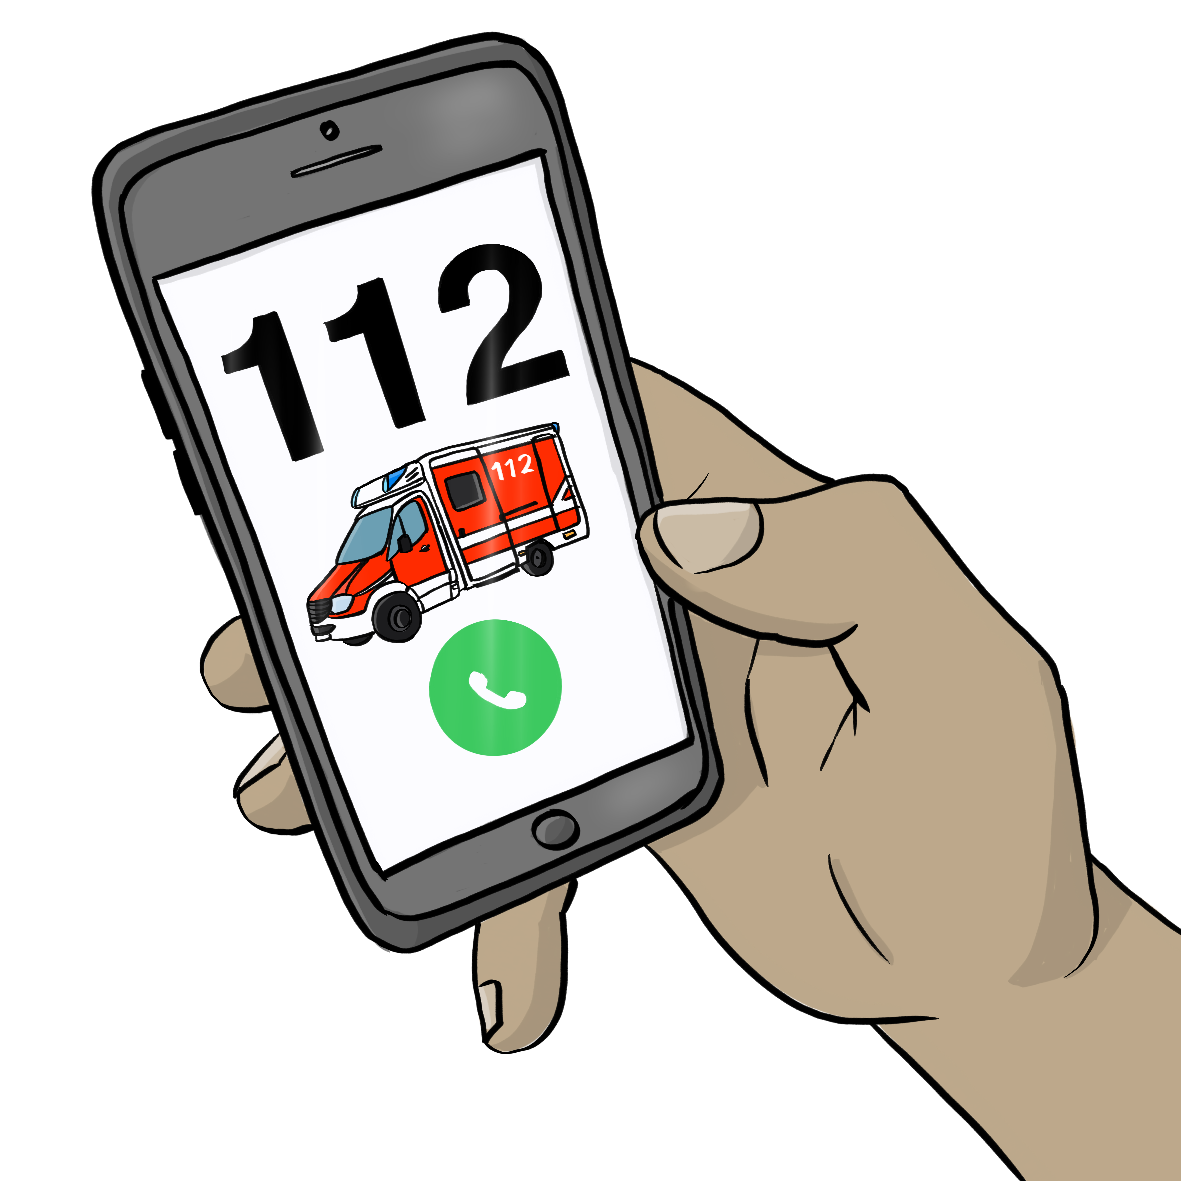 Eine Hand hält ein Smartphone. Auf dem Bildschirm ist die Nummer 112, ein Krankenwagen und ein grüner Kreis mit einem Telefon-Hörer-Symbol.